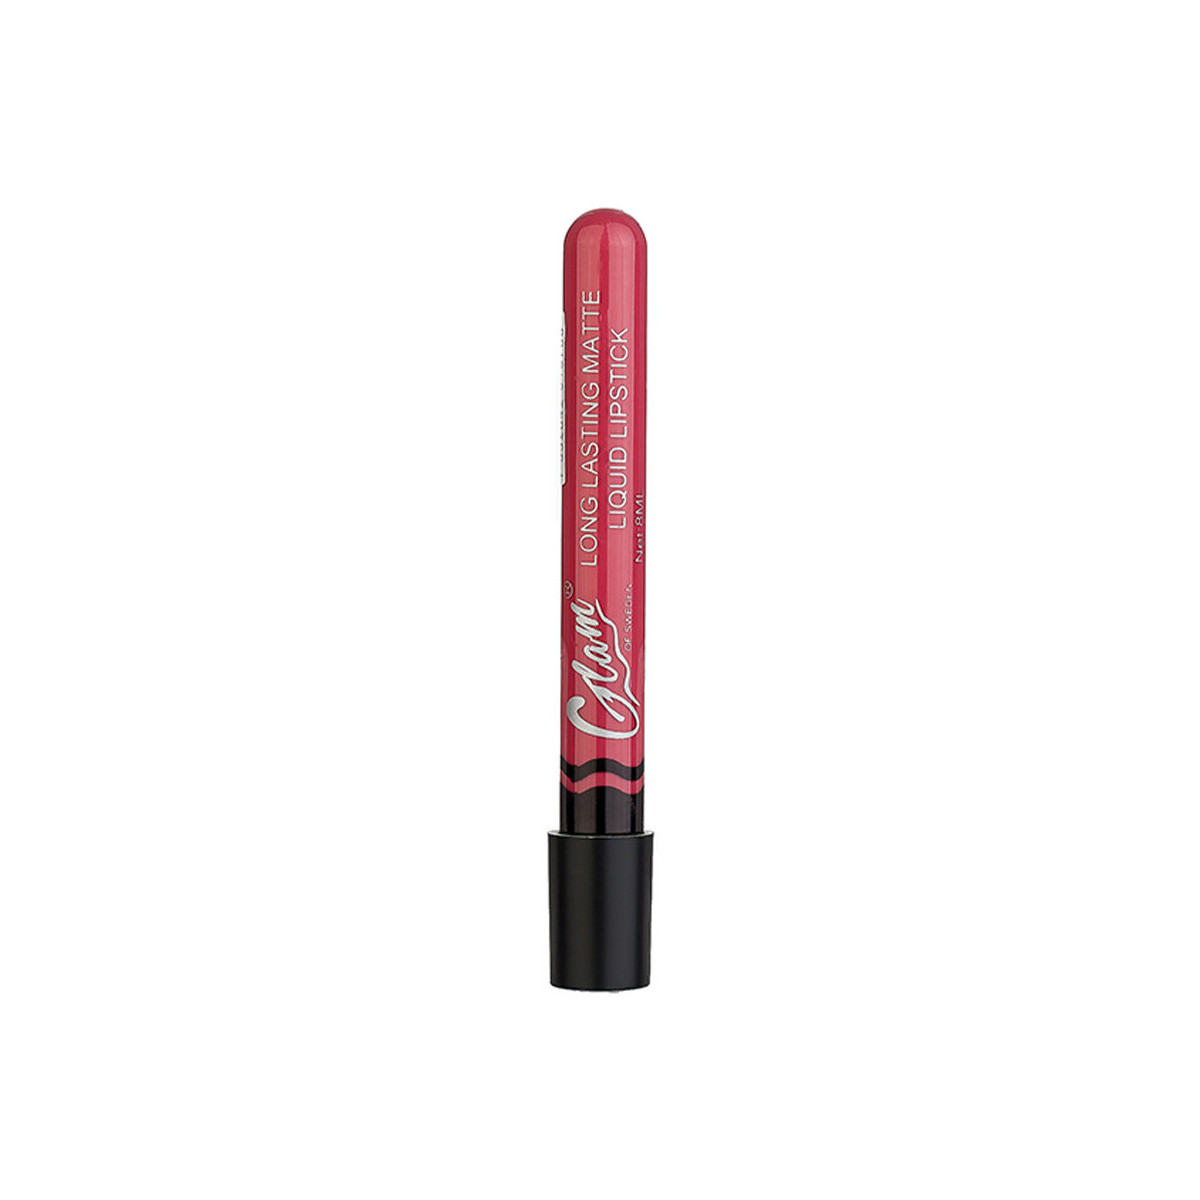 Bellezza Donna Rossetti Glam Of Sweden Matte Liquid Lipstick 02-clever 